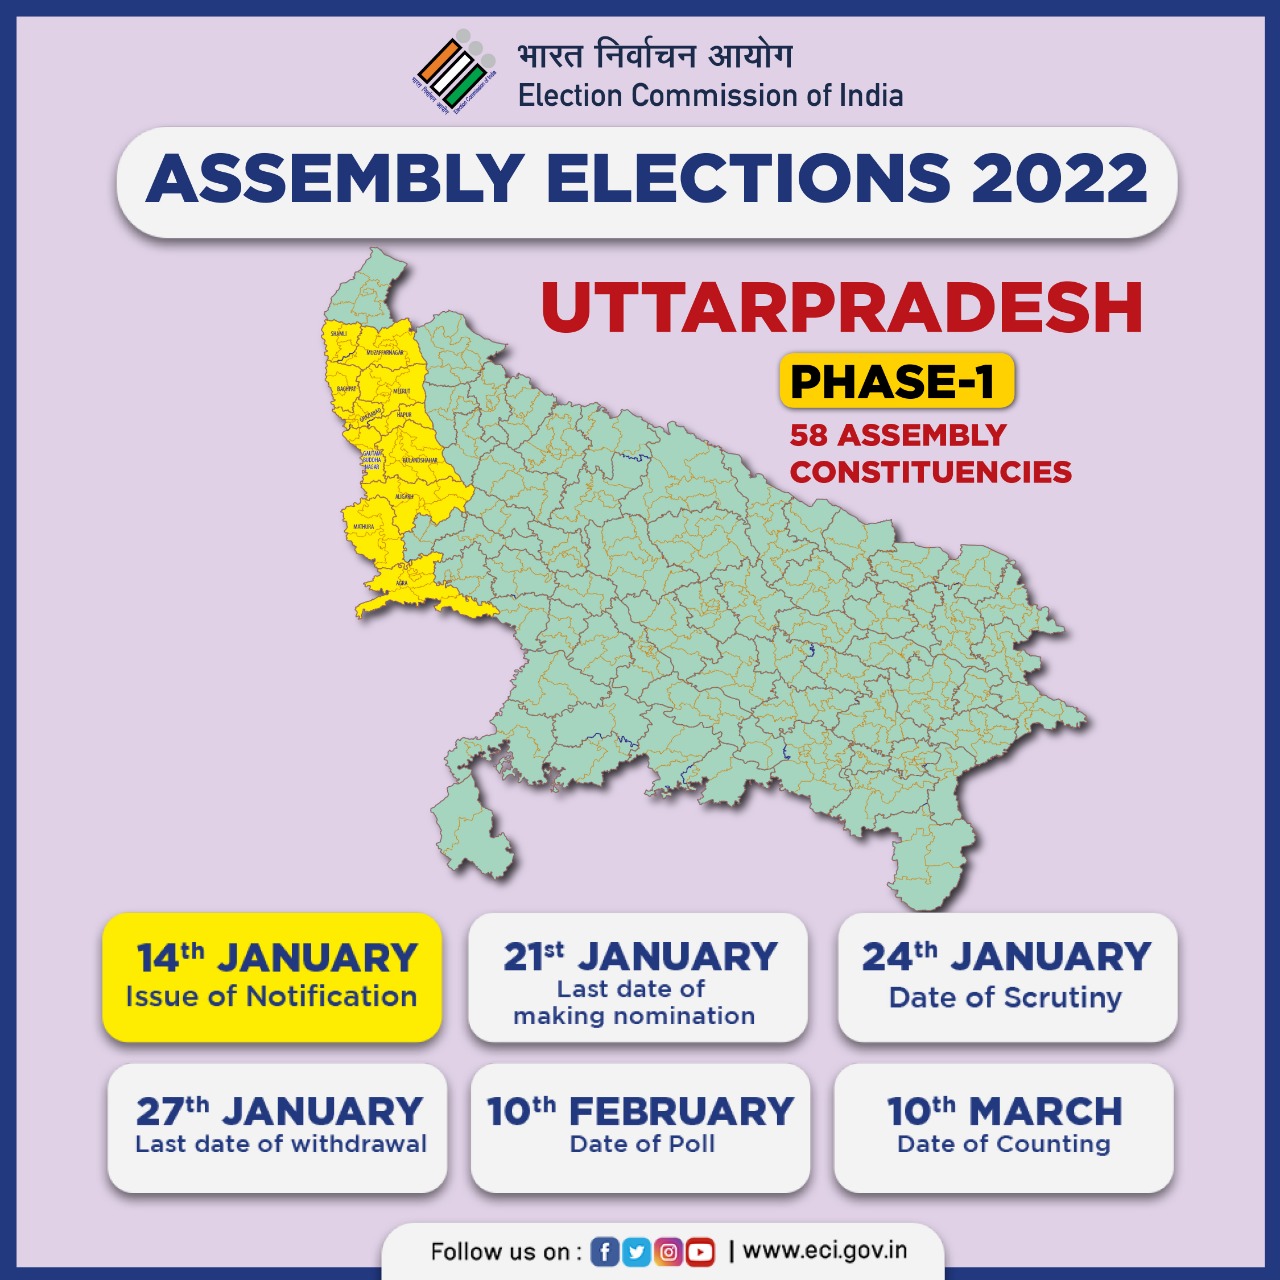 Assembly Elections 2022 : यूपी में 58 सीटों के लिए नामांकन प्रक्रिया शुरू, पहले दिन केवल एक पर्चा दाखिल